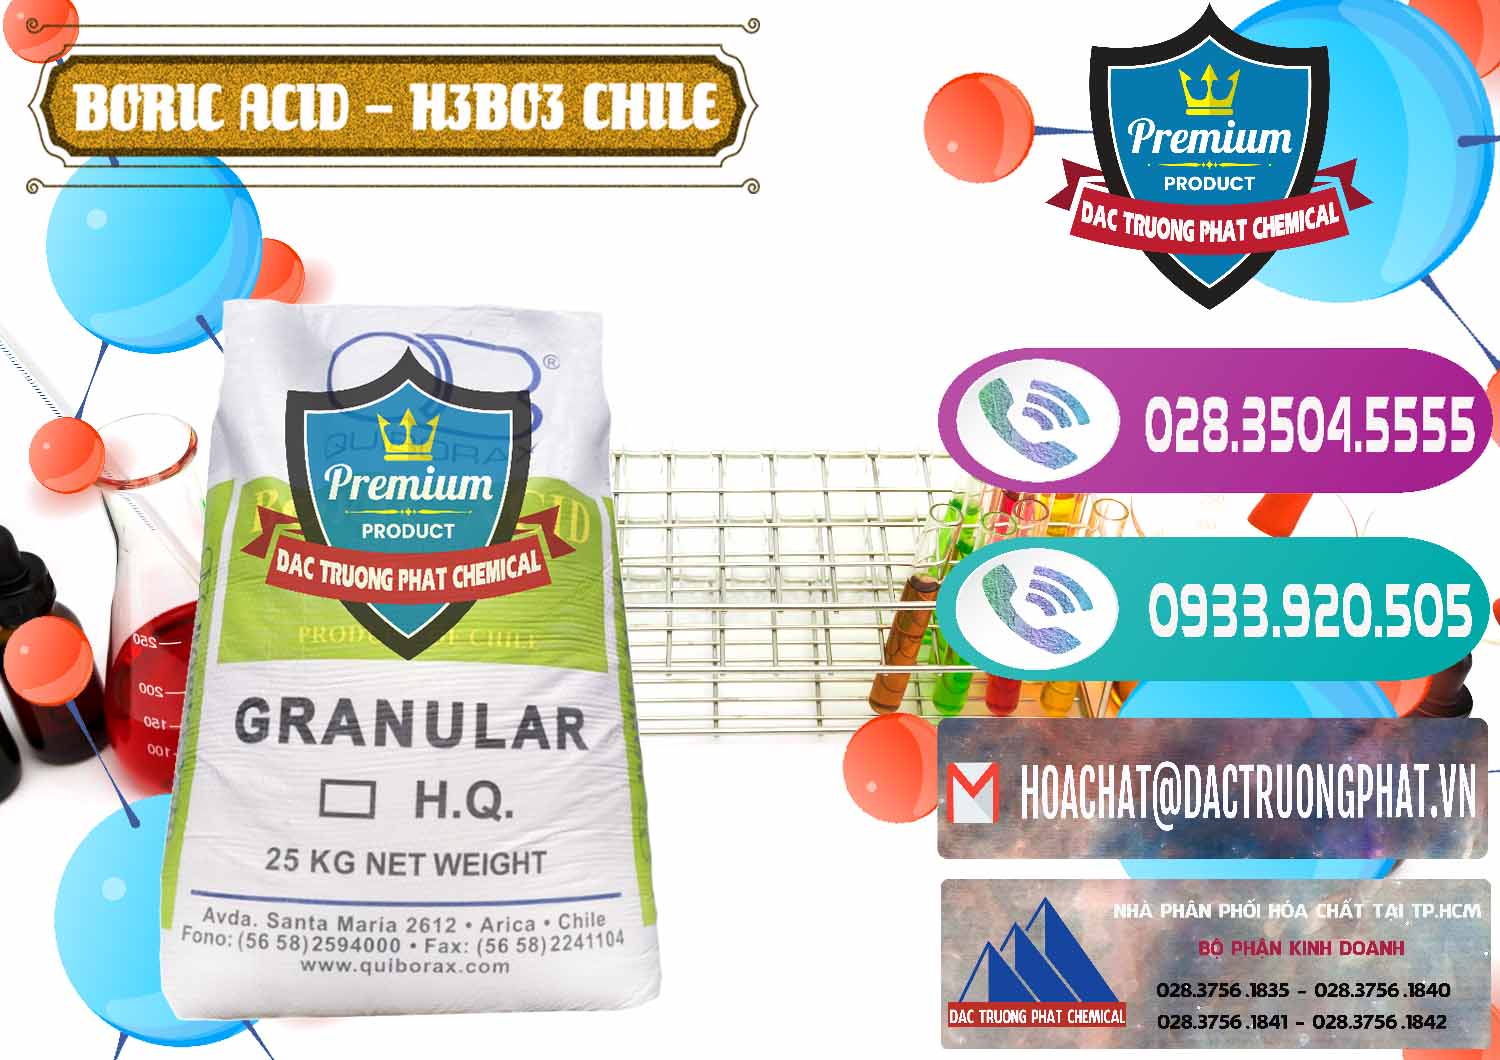 Đơn vị chuyên bán _ cung ứng Acid Boric – Axit Boric H3BO3 99% Quiborax Chile - 0281 - Nơi phân phối ( cung cấp ) hóa chất tại TP.HCM - hoachatxulynuoc.com